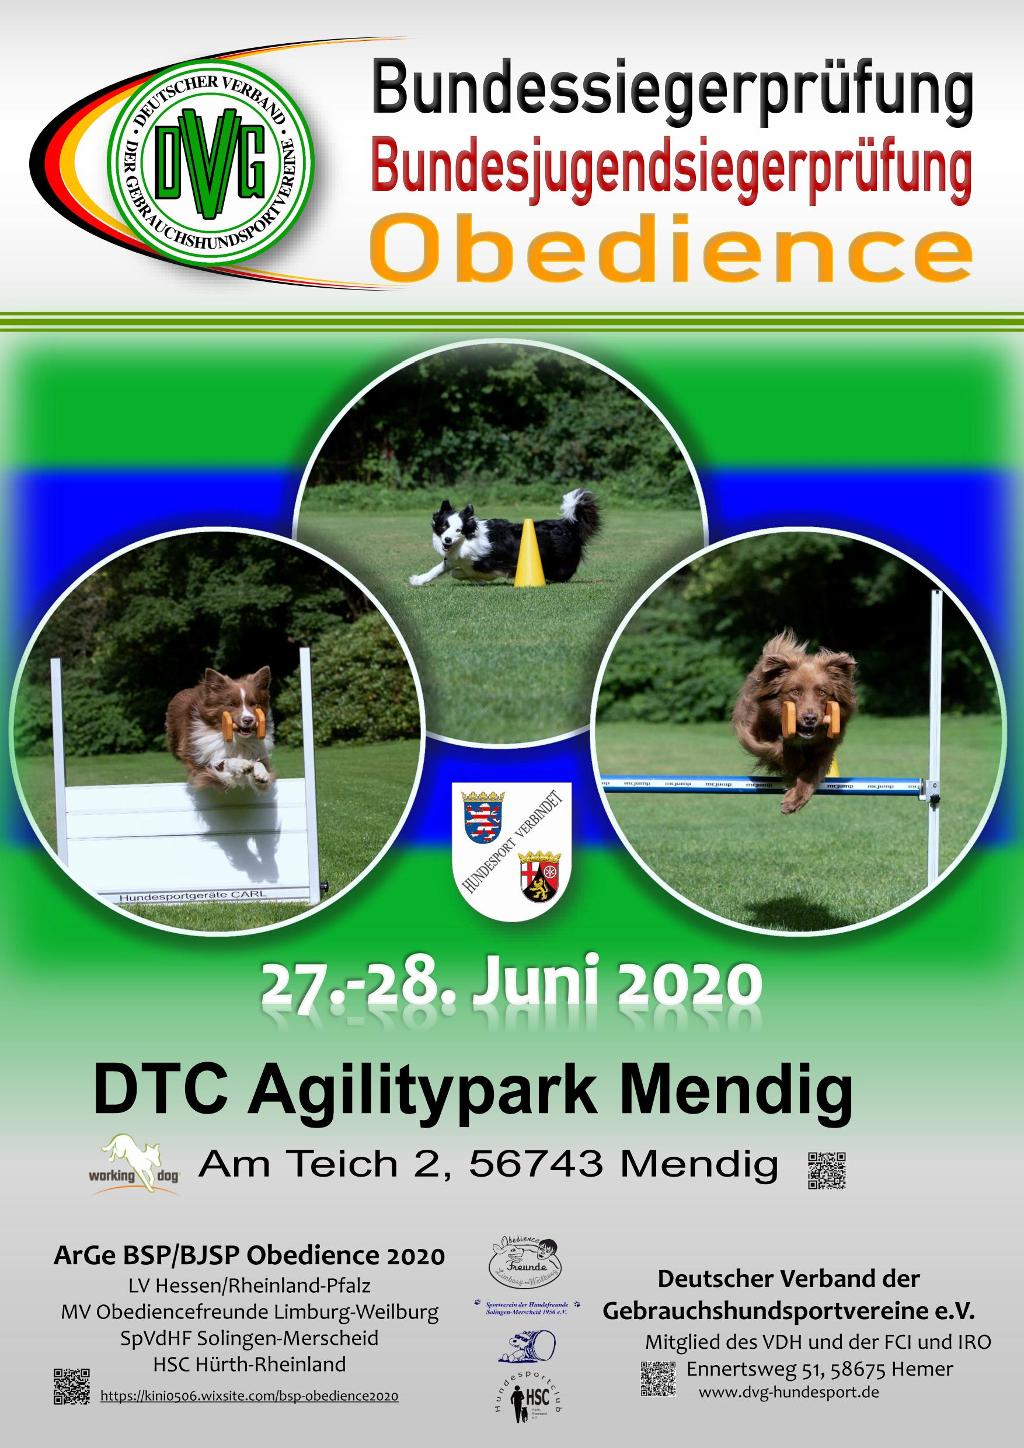 plakat_dvg-bsp-obedience_2020_v2.jpg